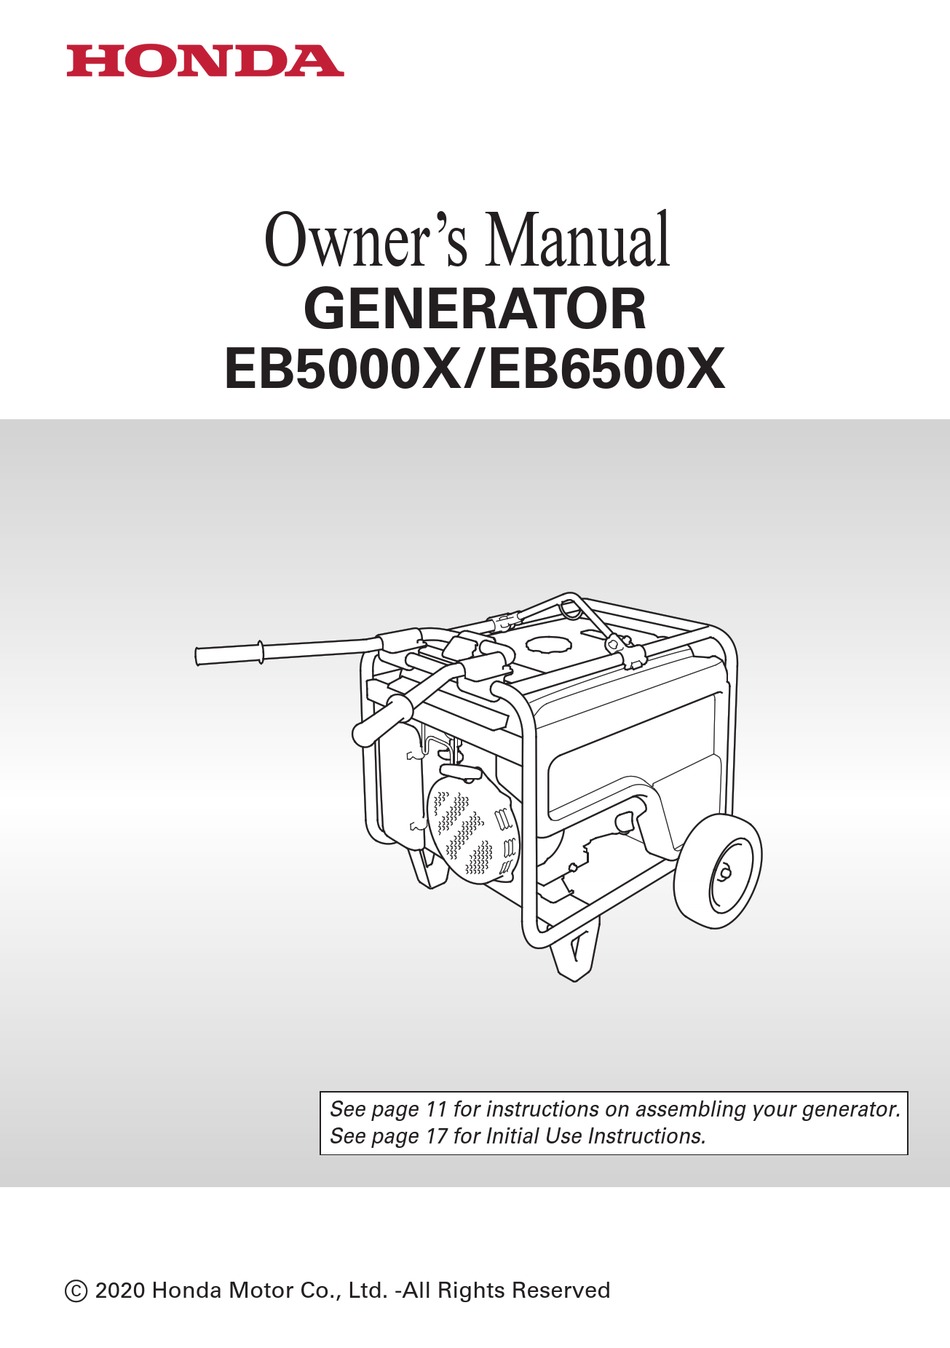 HONDA EB5000X OWNER'S MANUAL Pdf Download | ManualsLib